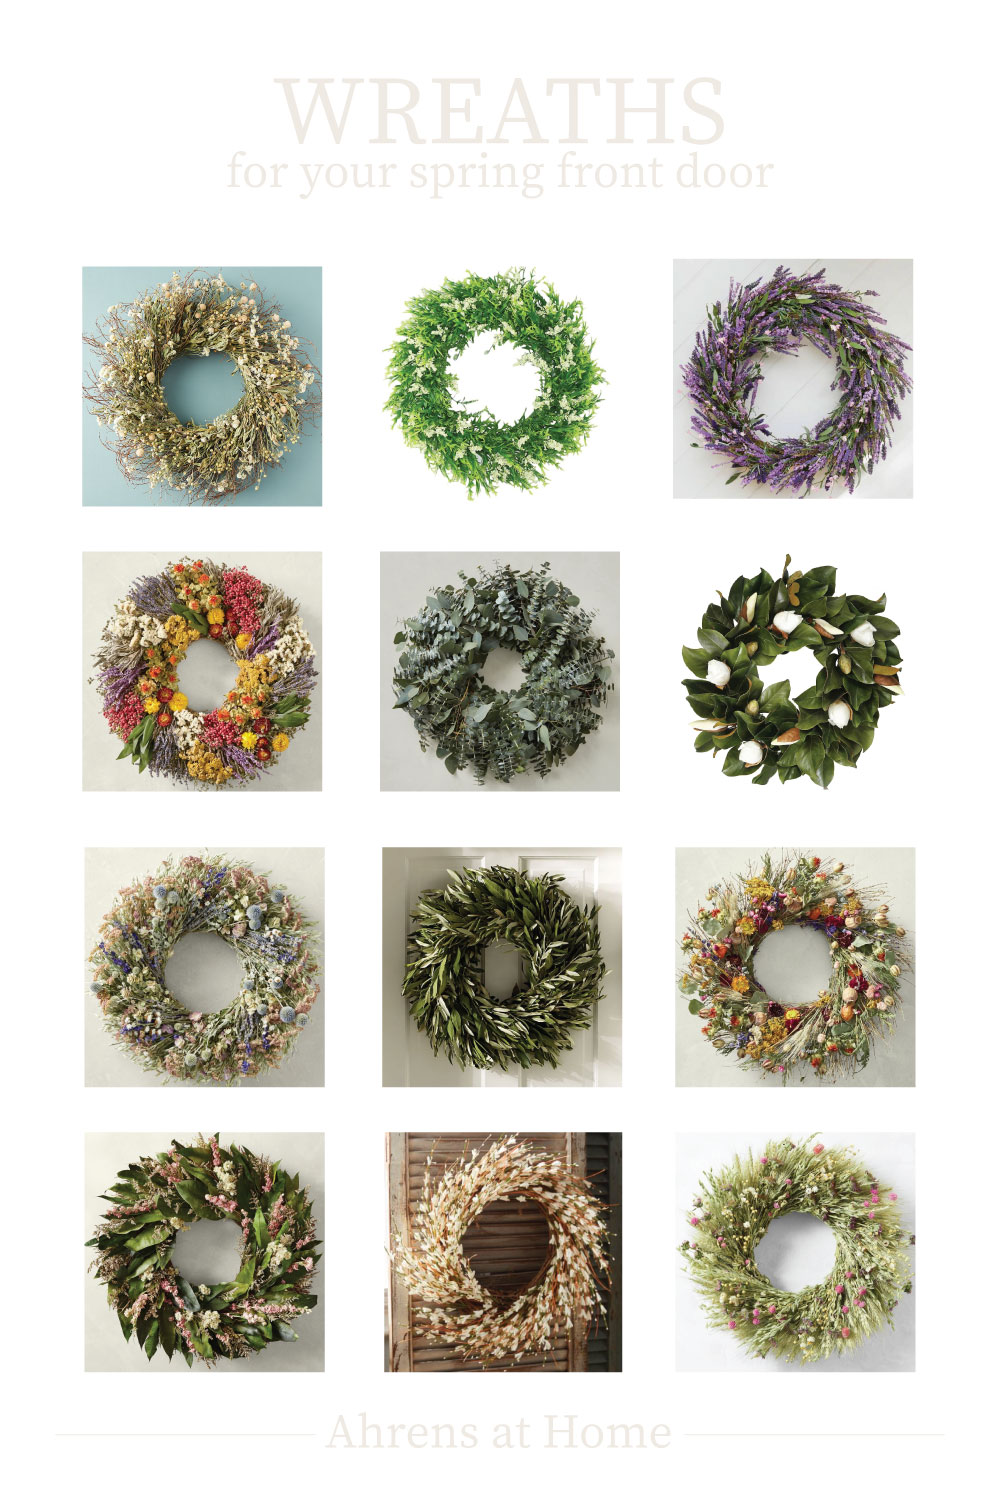 grid of spring wreaths